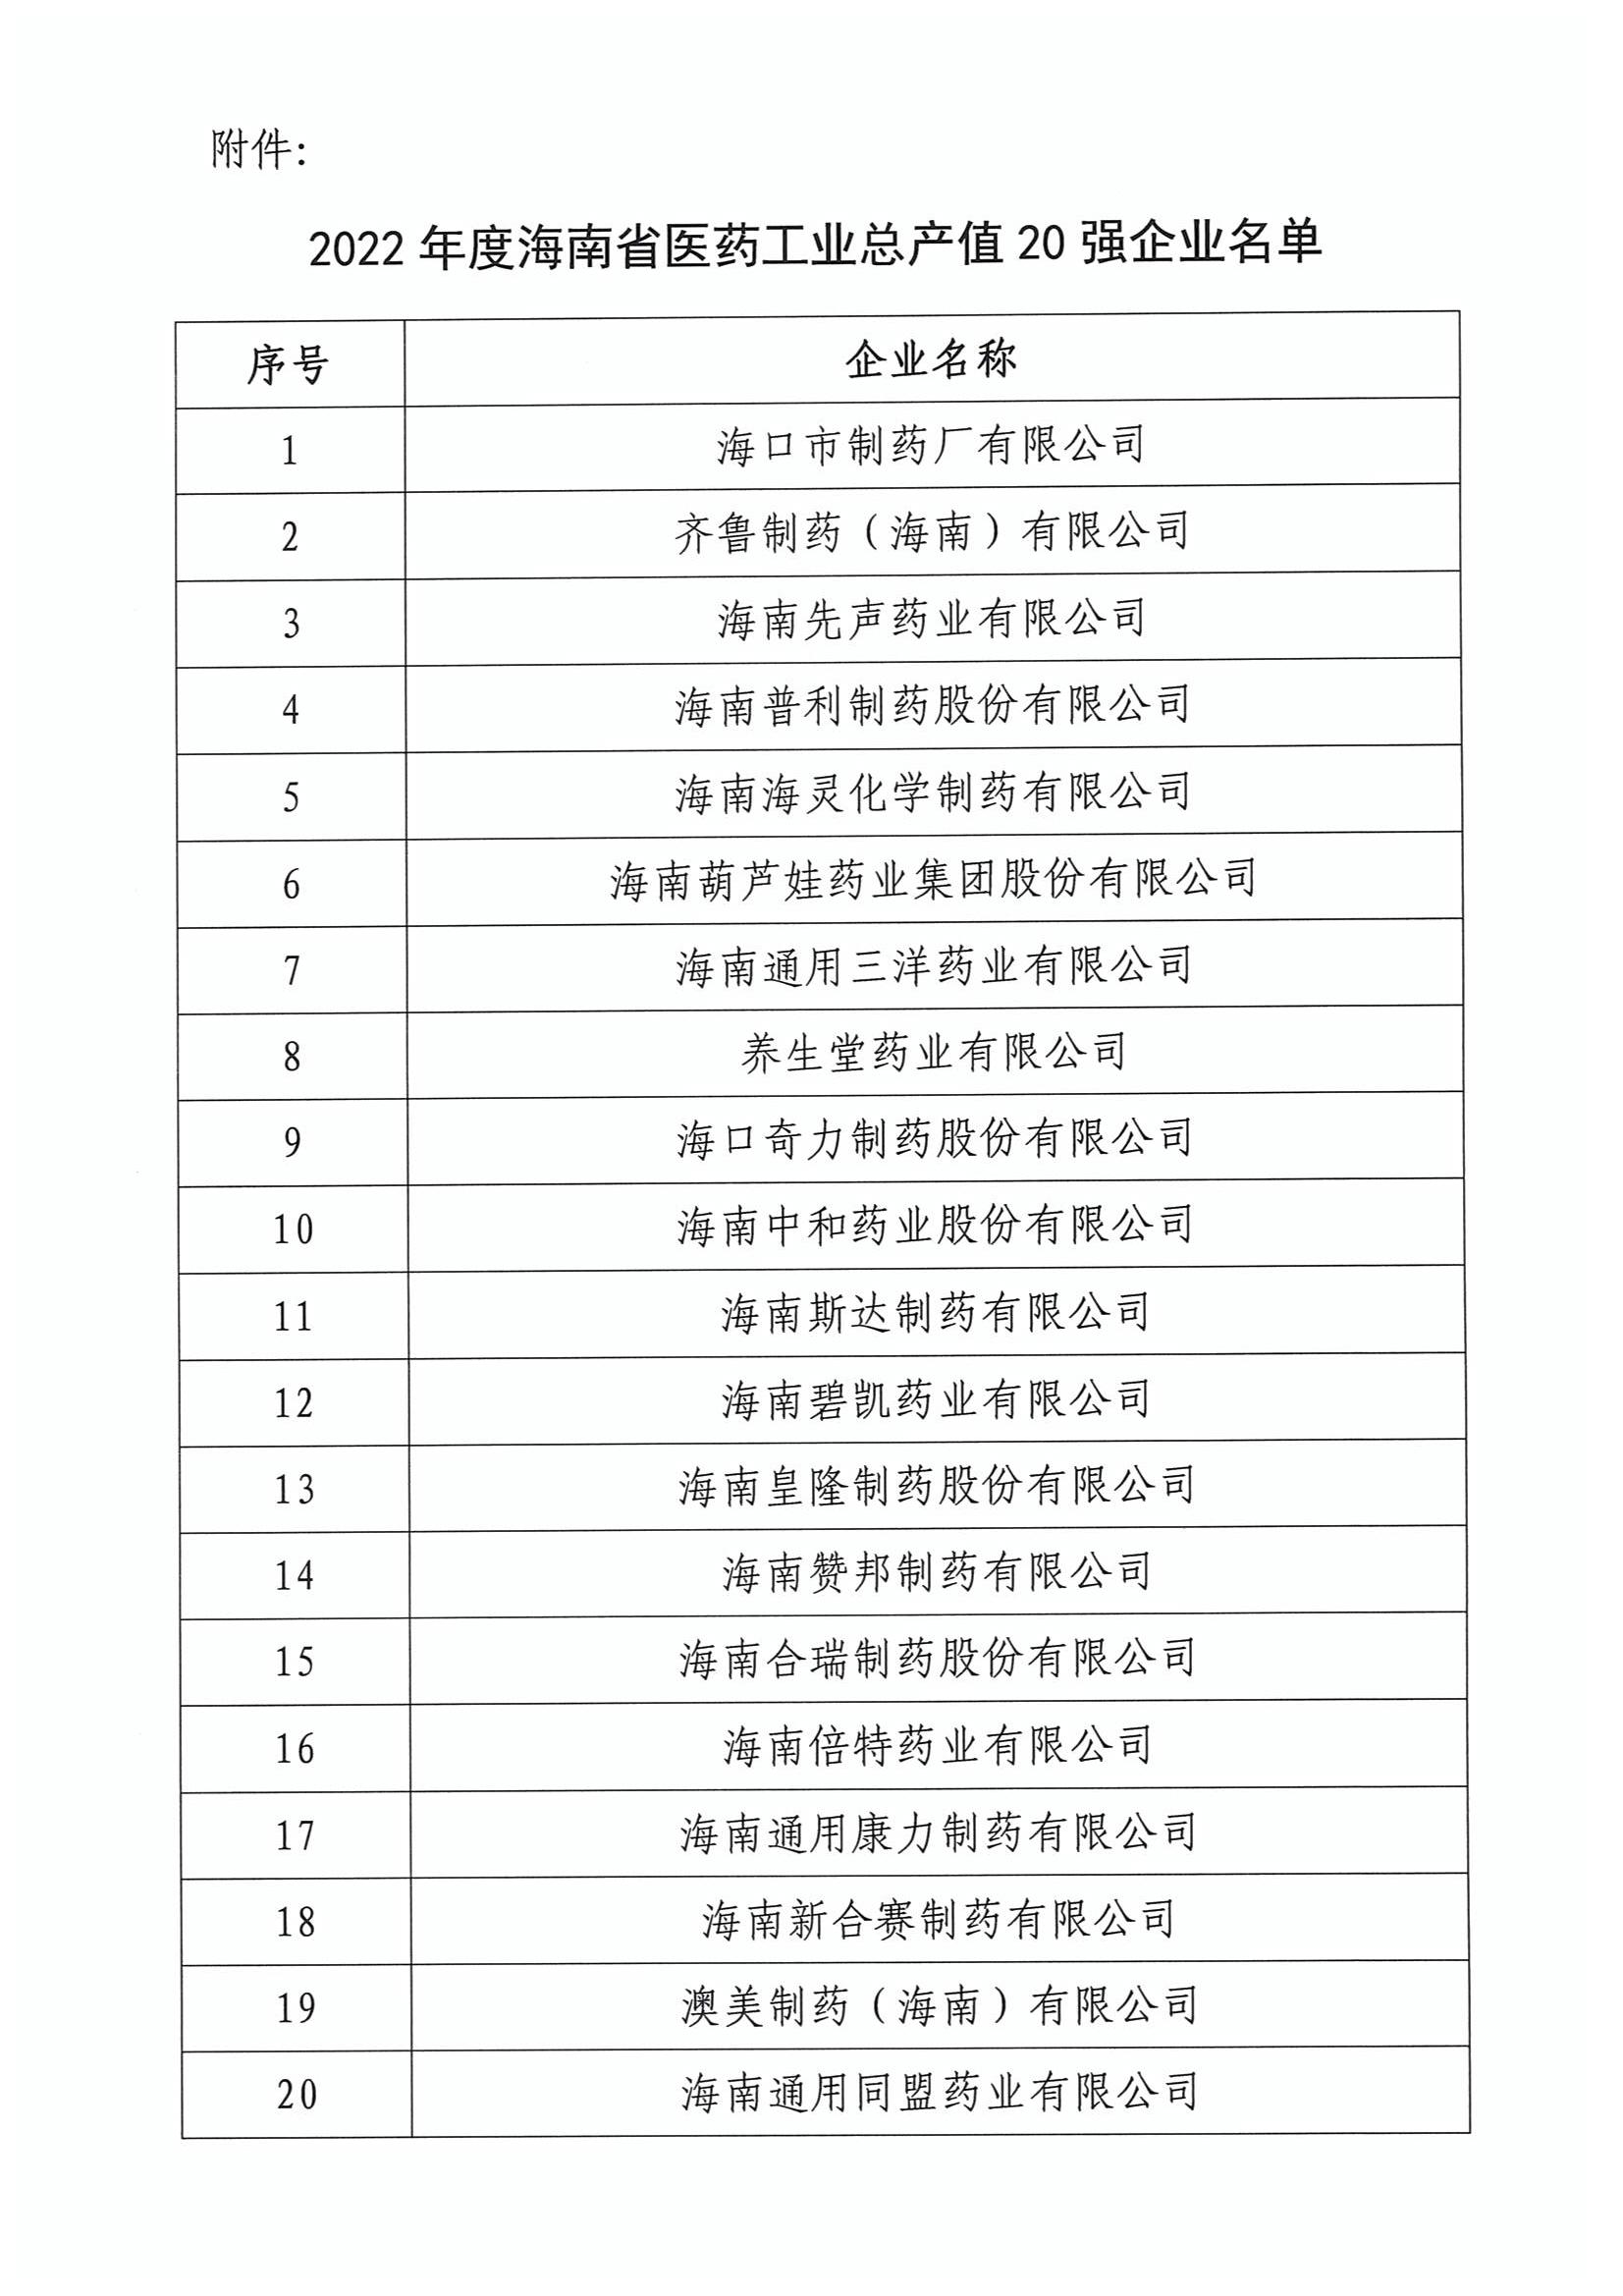 关于表扬2022年度海南省医药工业总产值20强的通报_01.jpg